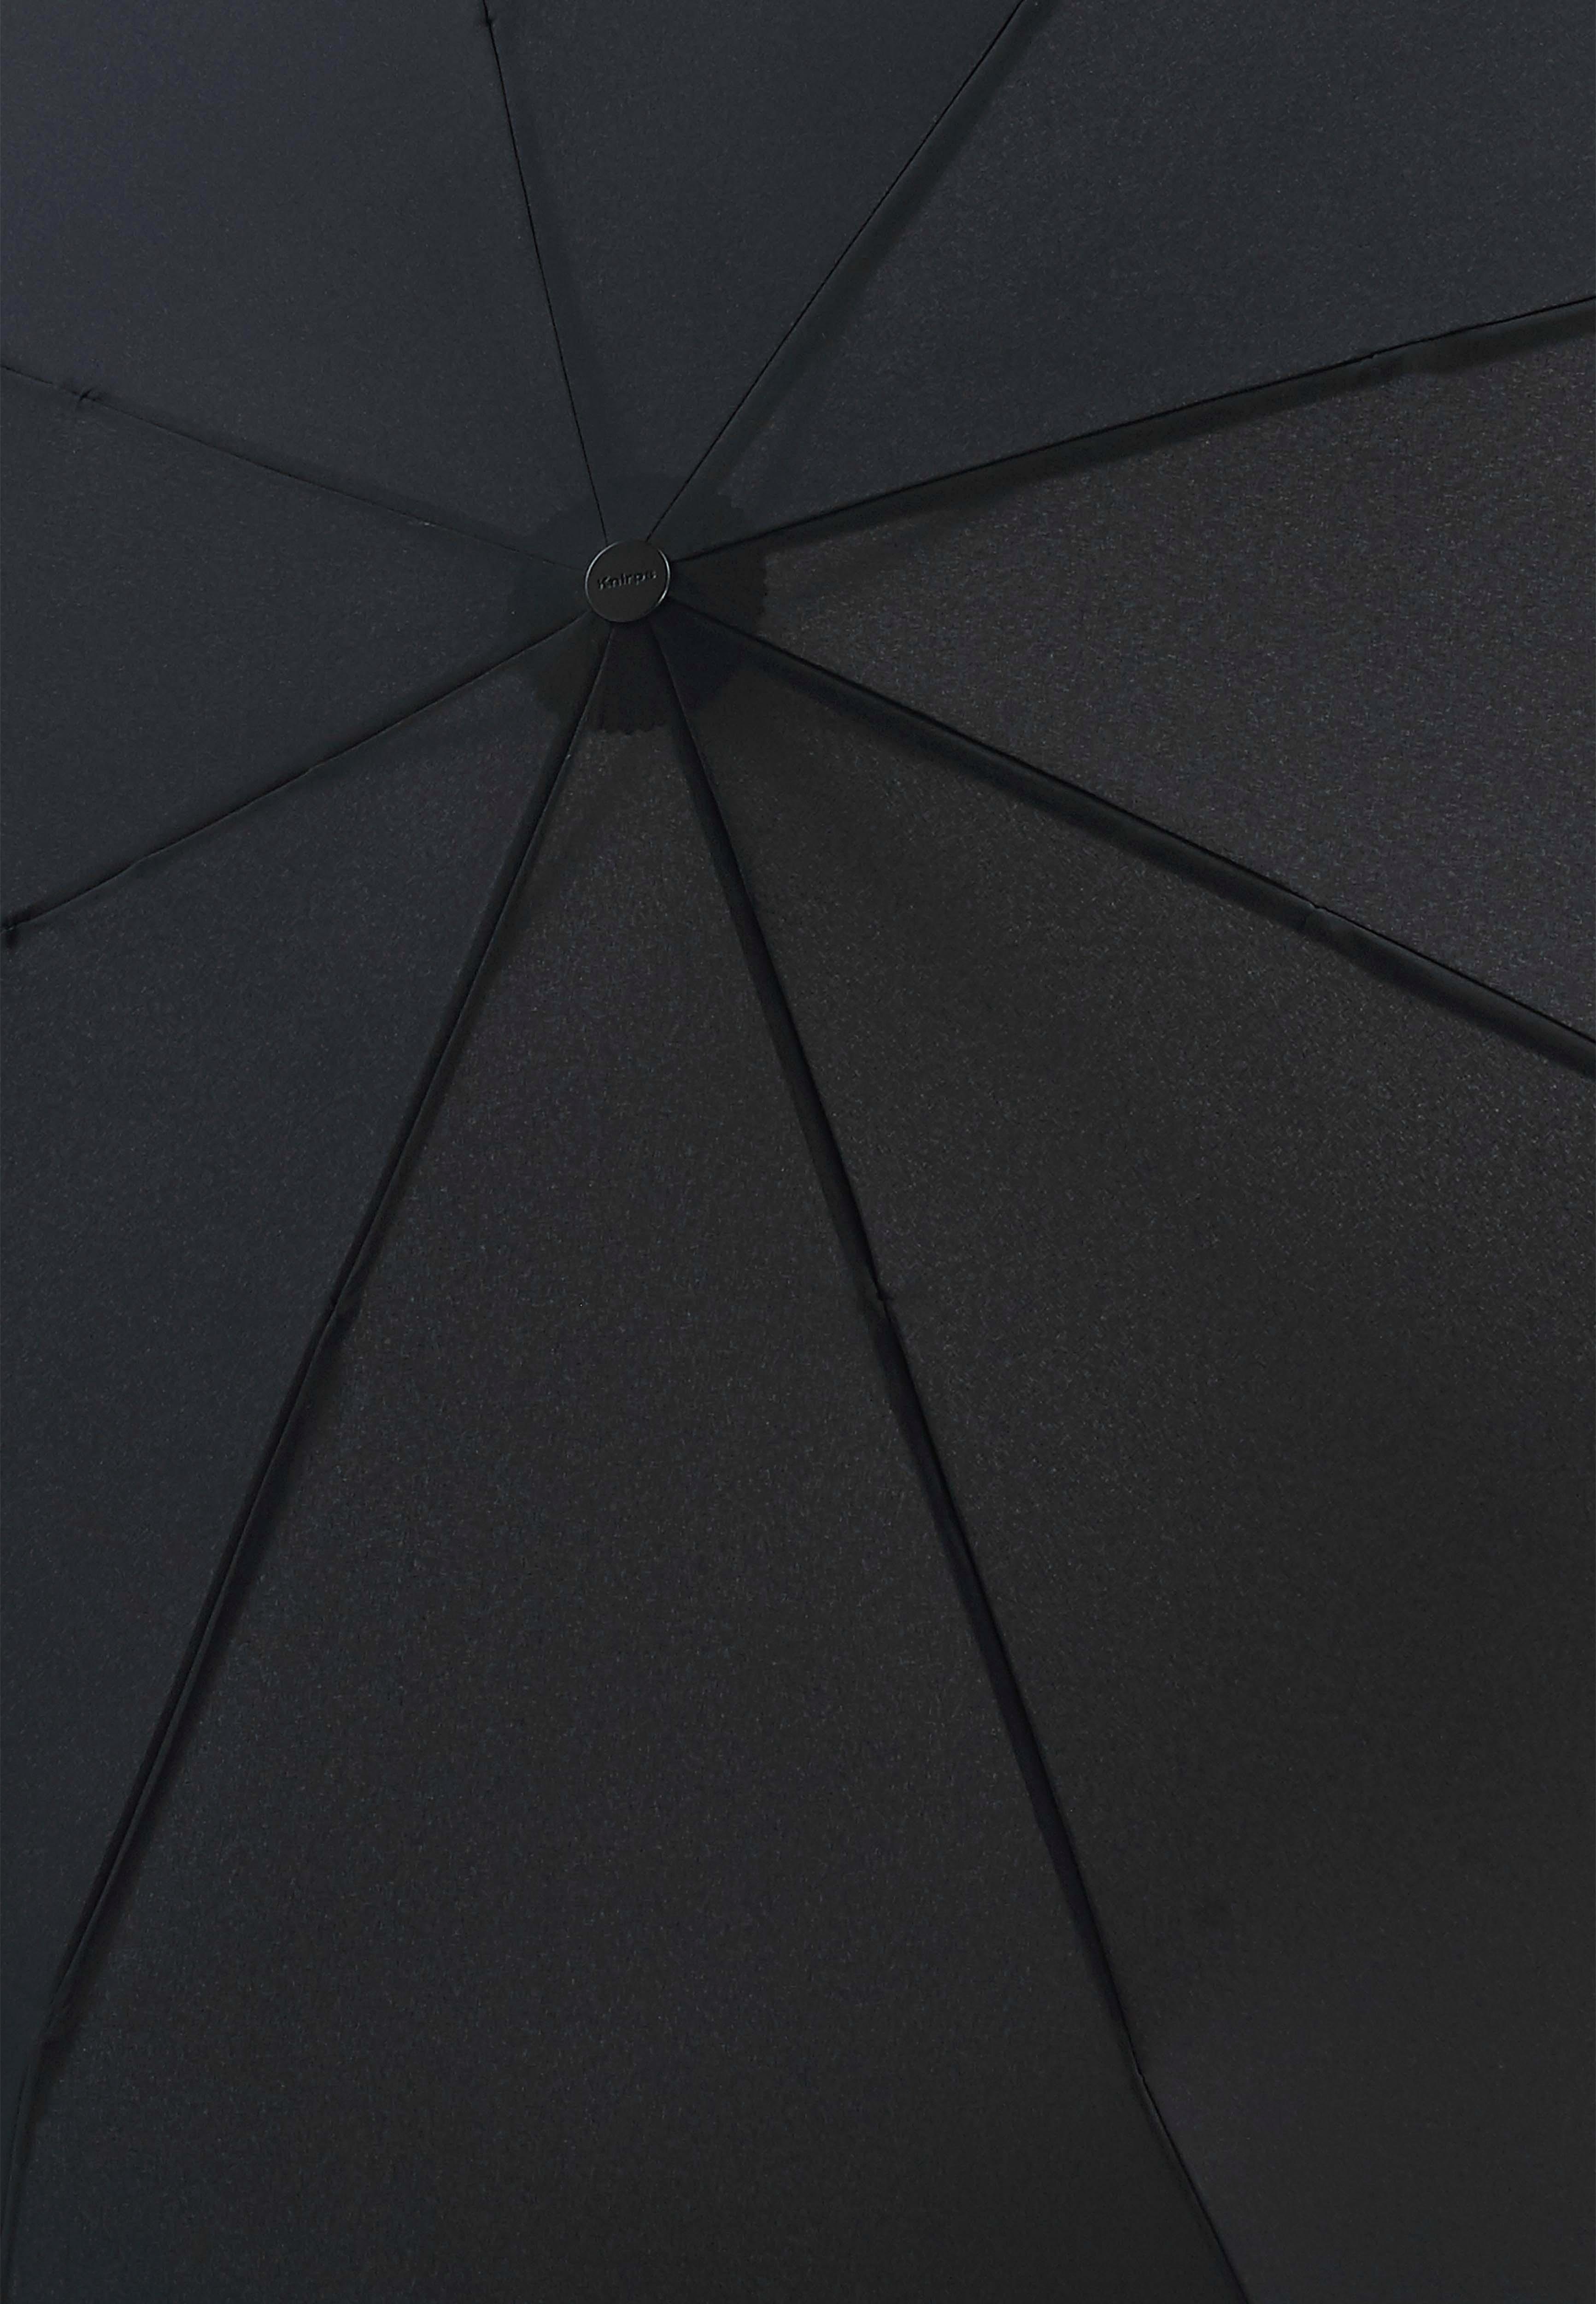 Knirps® Taschenregenschirm T.400 black, Duomatic, Large Schirmdach mit großem uni 2 für Personen Extra